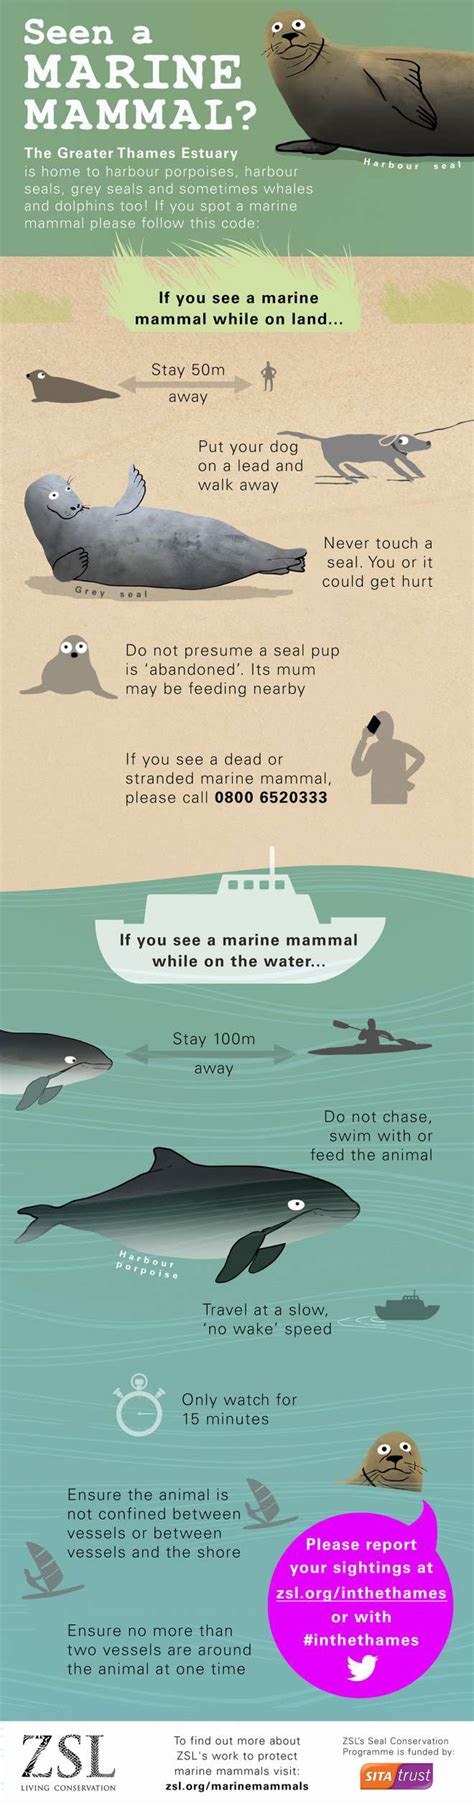 Infographic Marine Mammal Code Of Conduct Marine Biology Marine